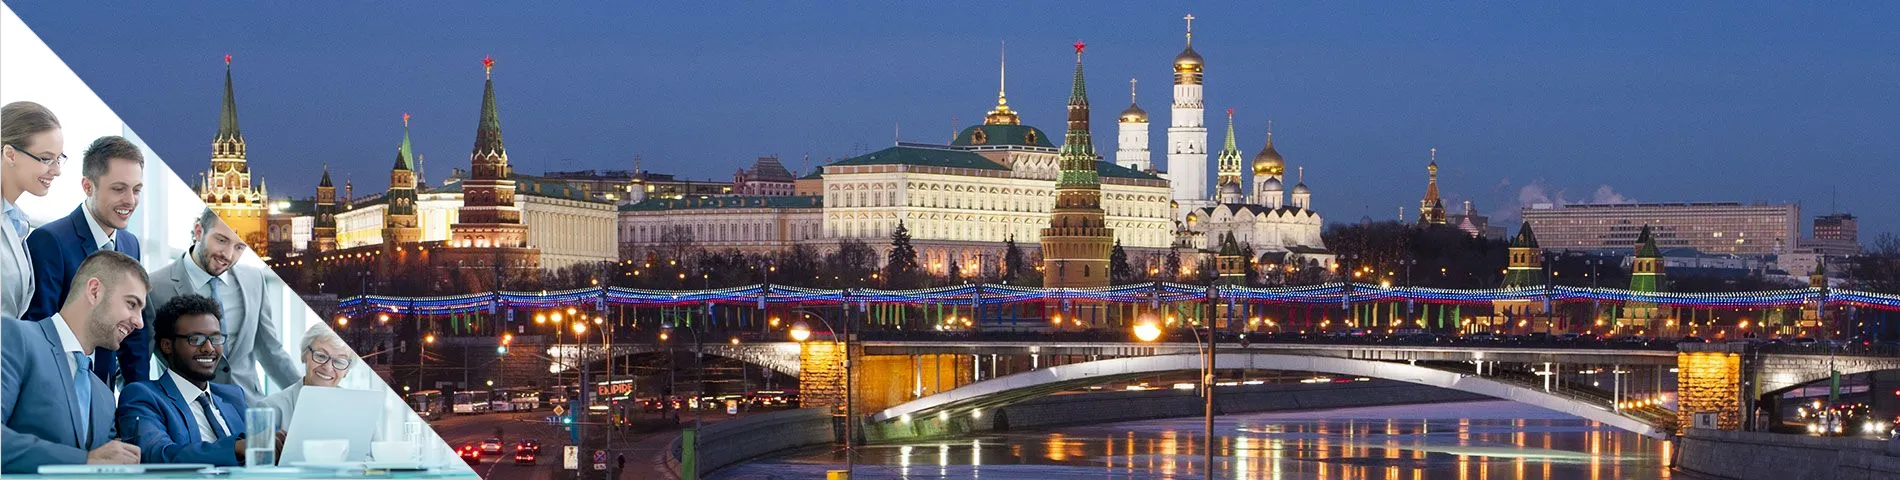 Moscú - Ruso de Negocios en Grupo